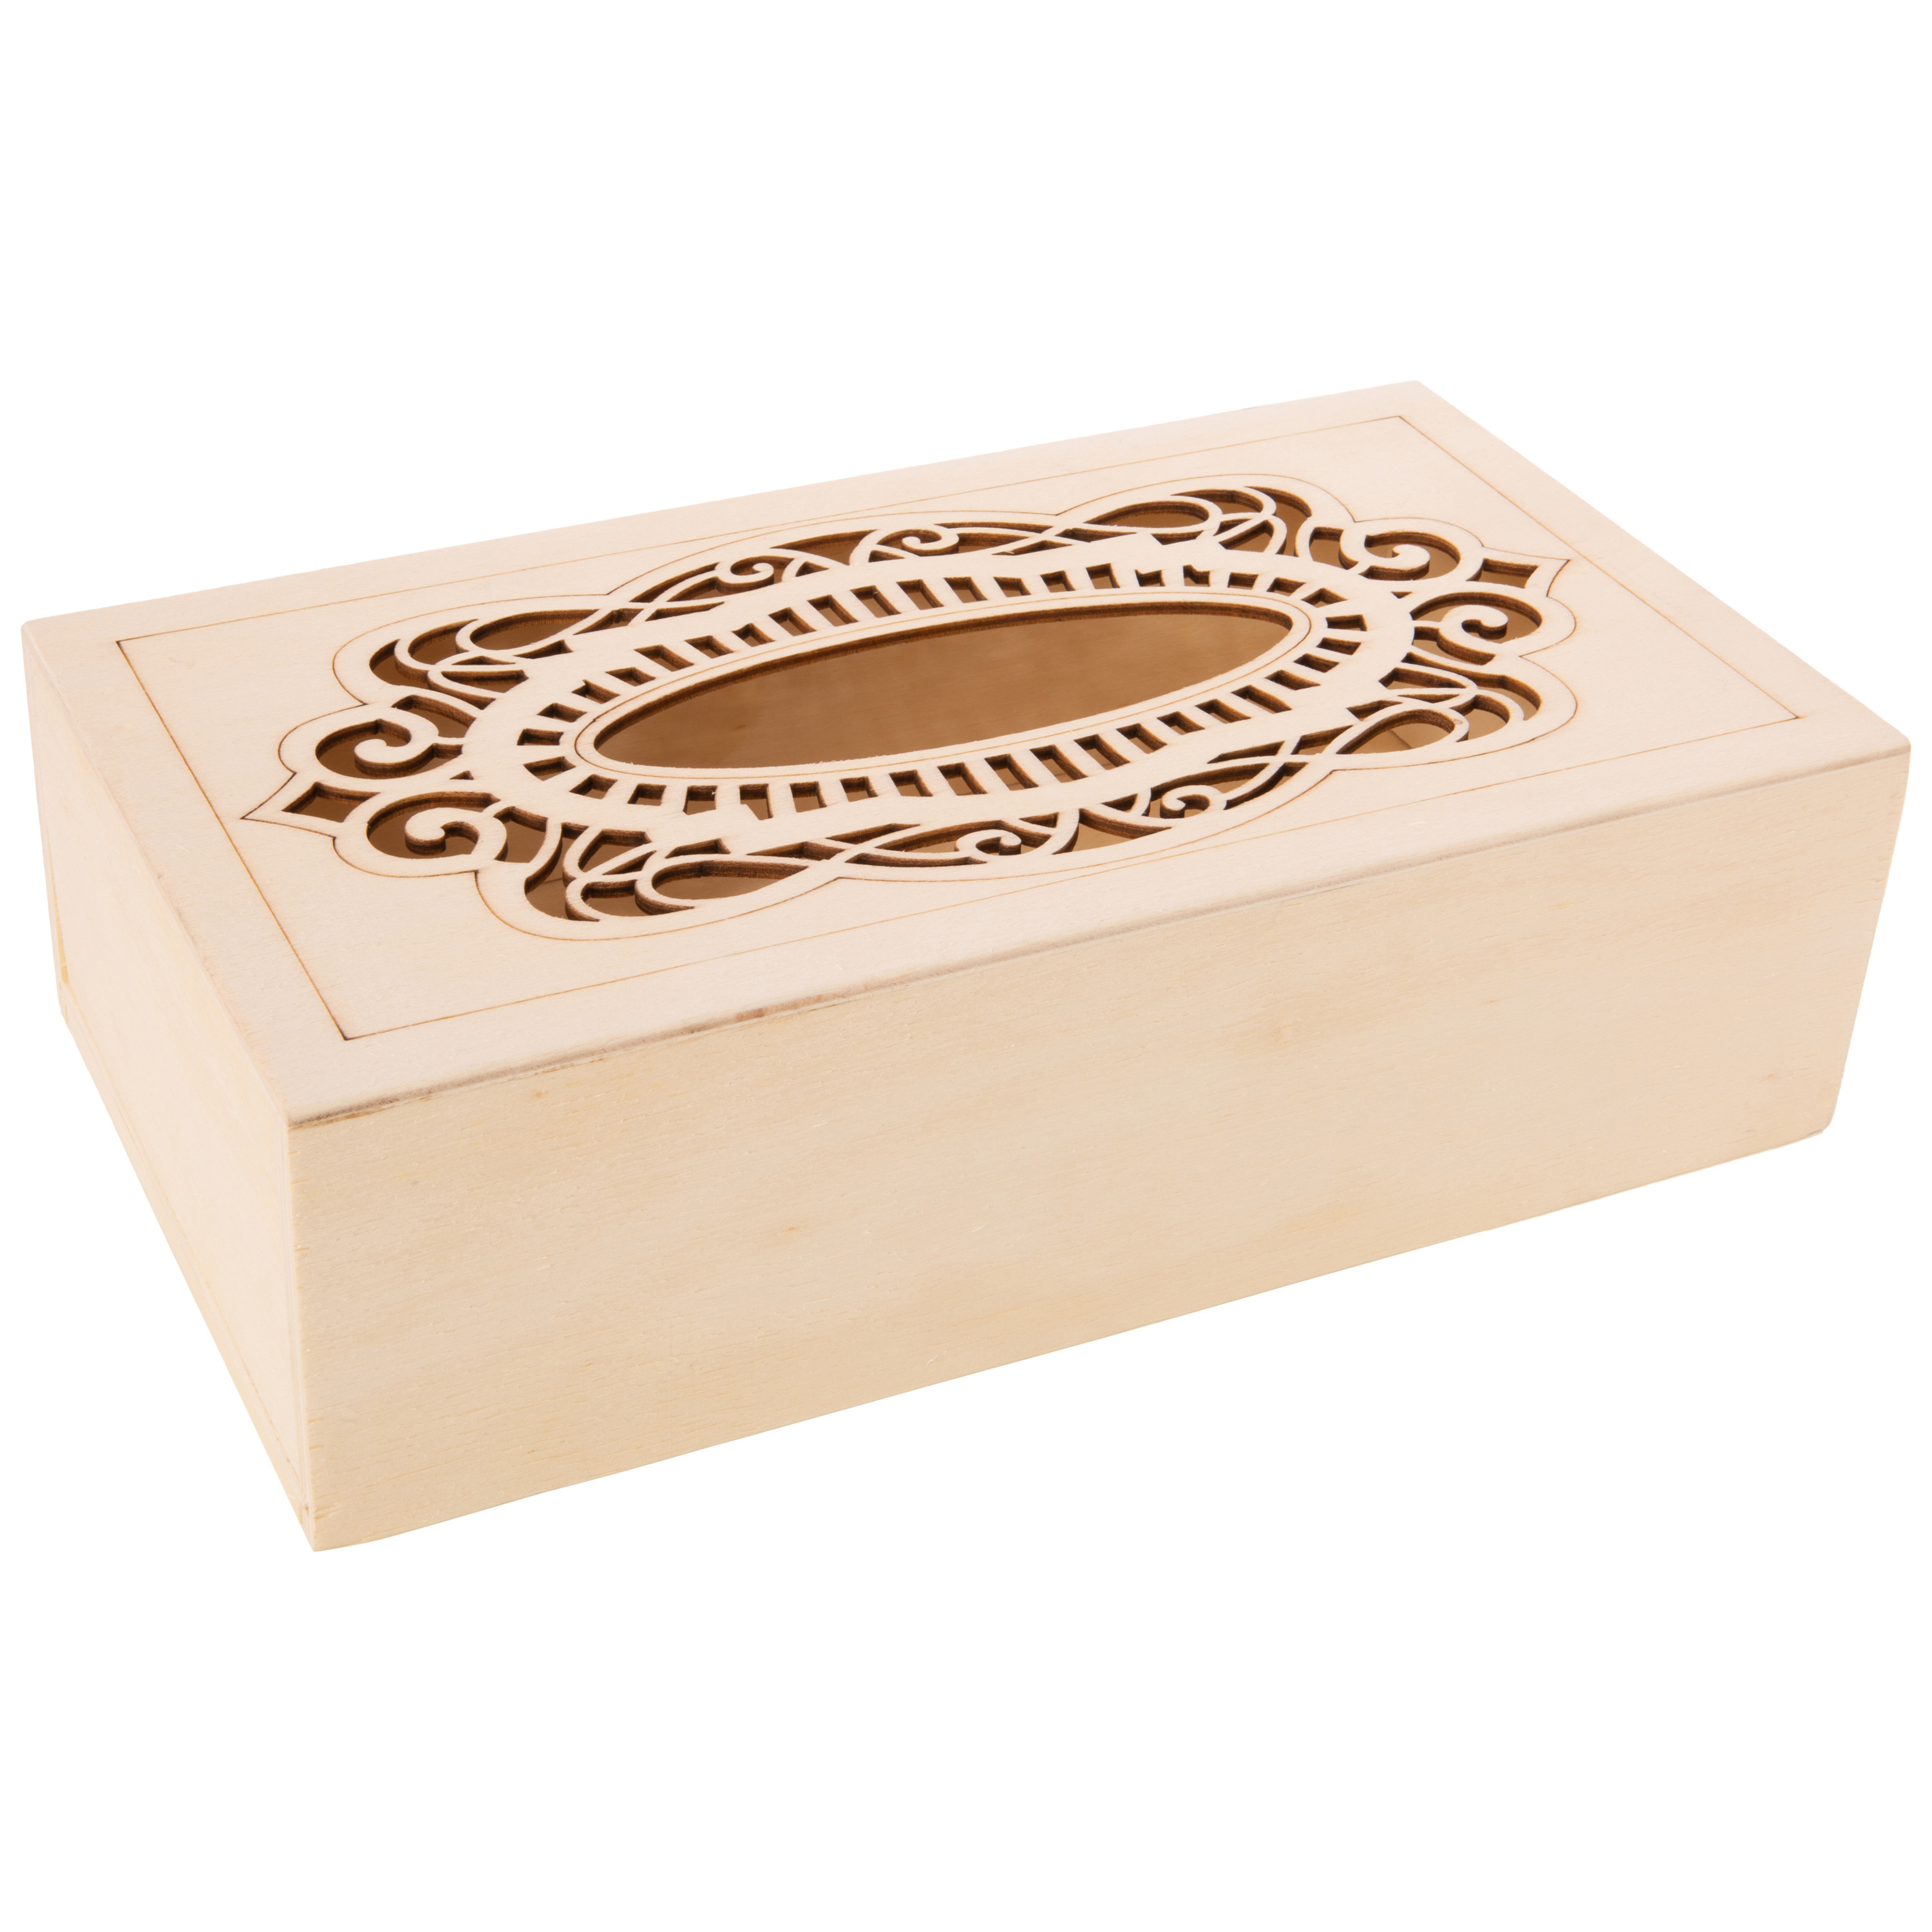 Tissuedoos-tissuebox rechthoekig van hout met sierlijk design 26 x 14 cm naturel